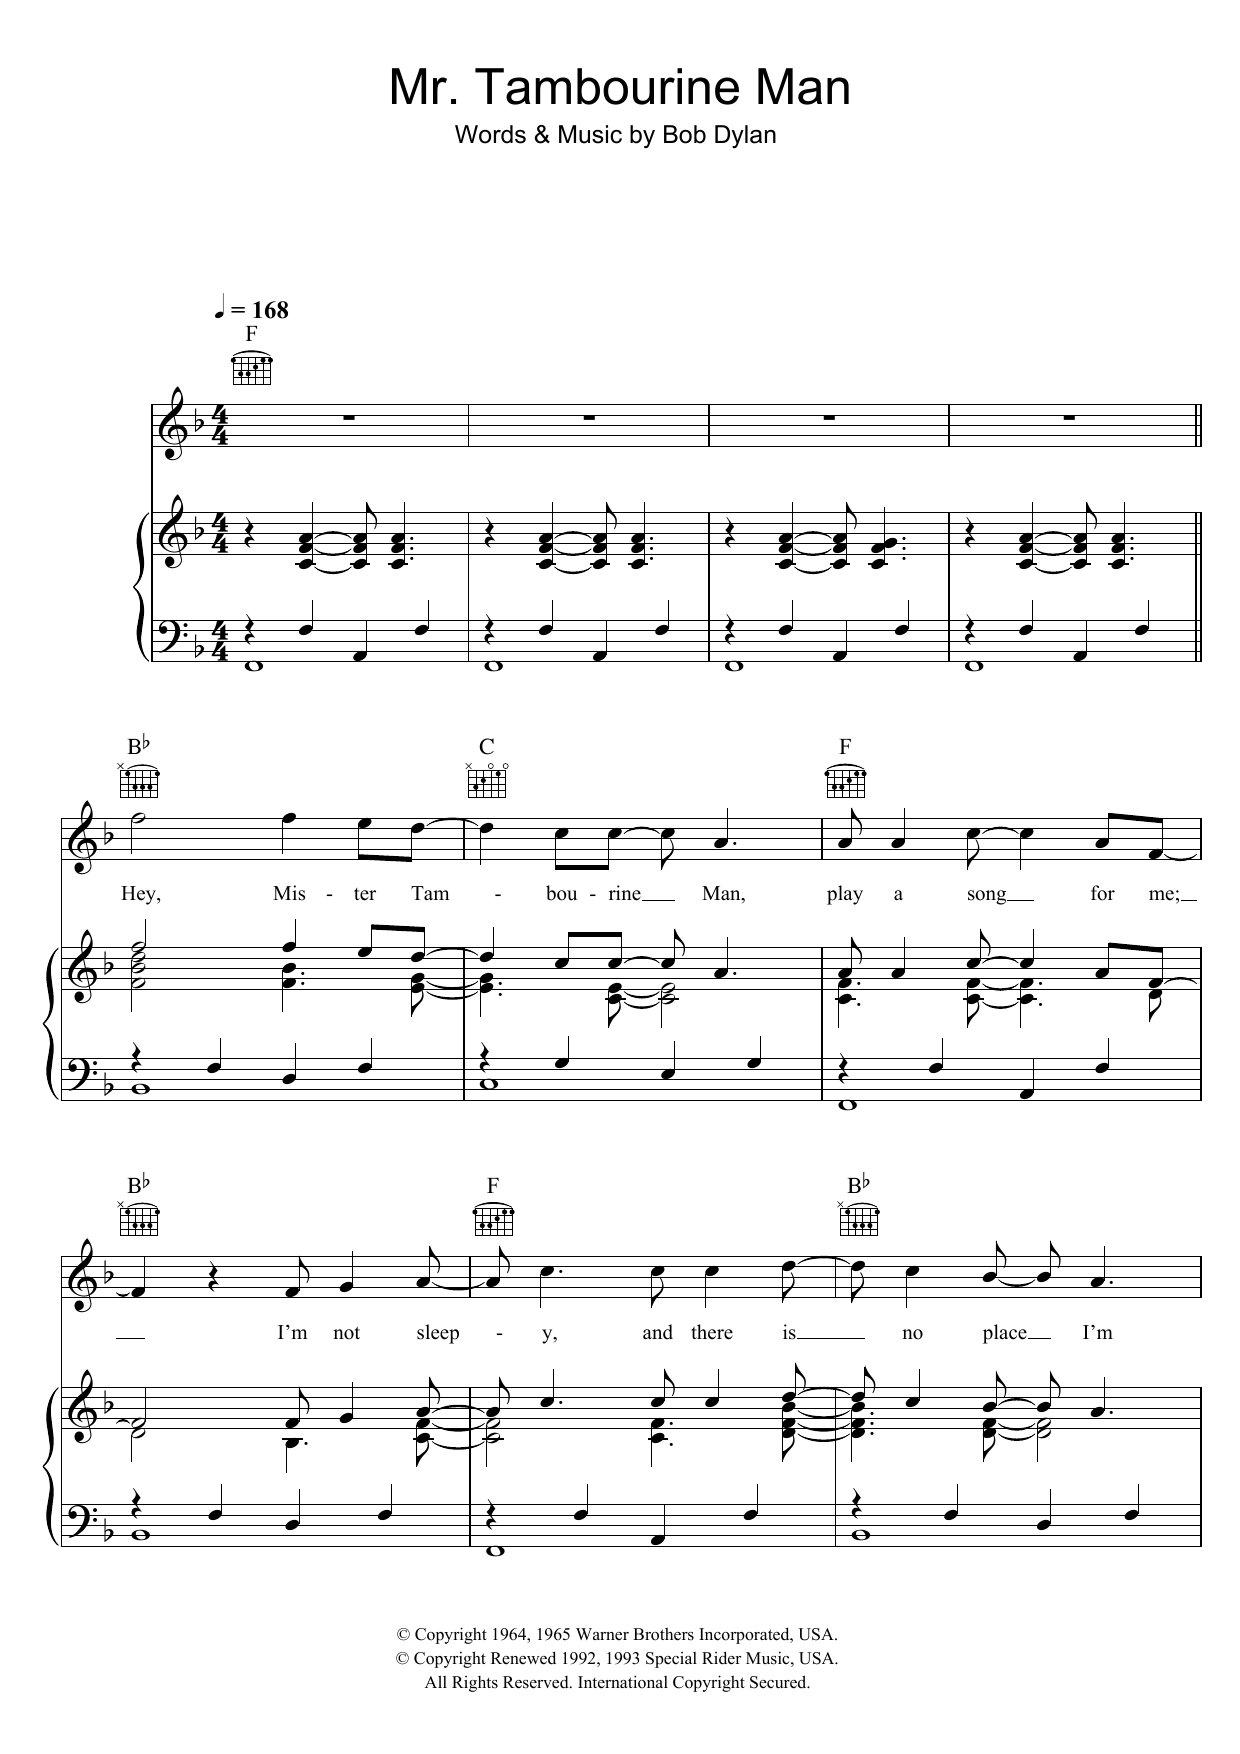 Bob Dylan Mr. Tambourine Man Sheet Music Notes & Chords for Lyrics & Chords - Download or Print PDF